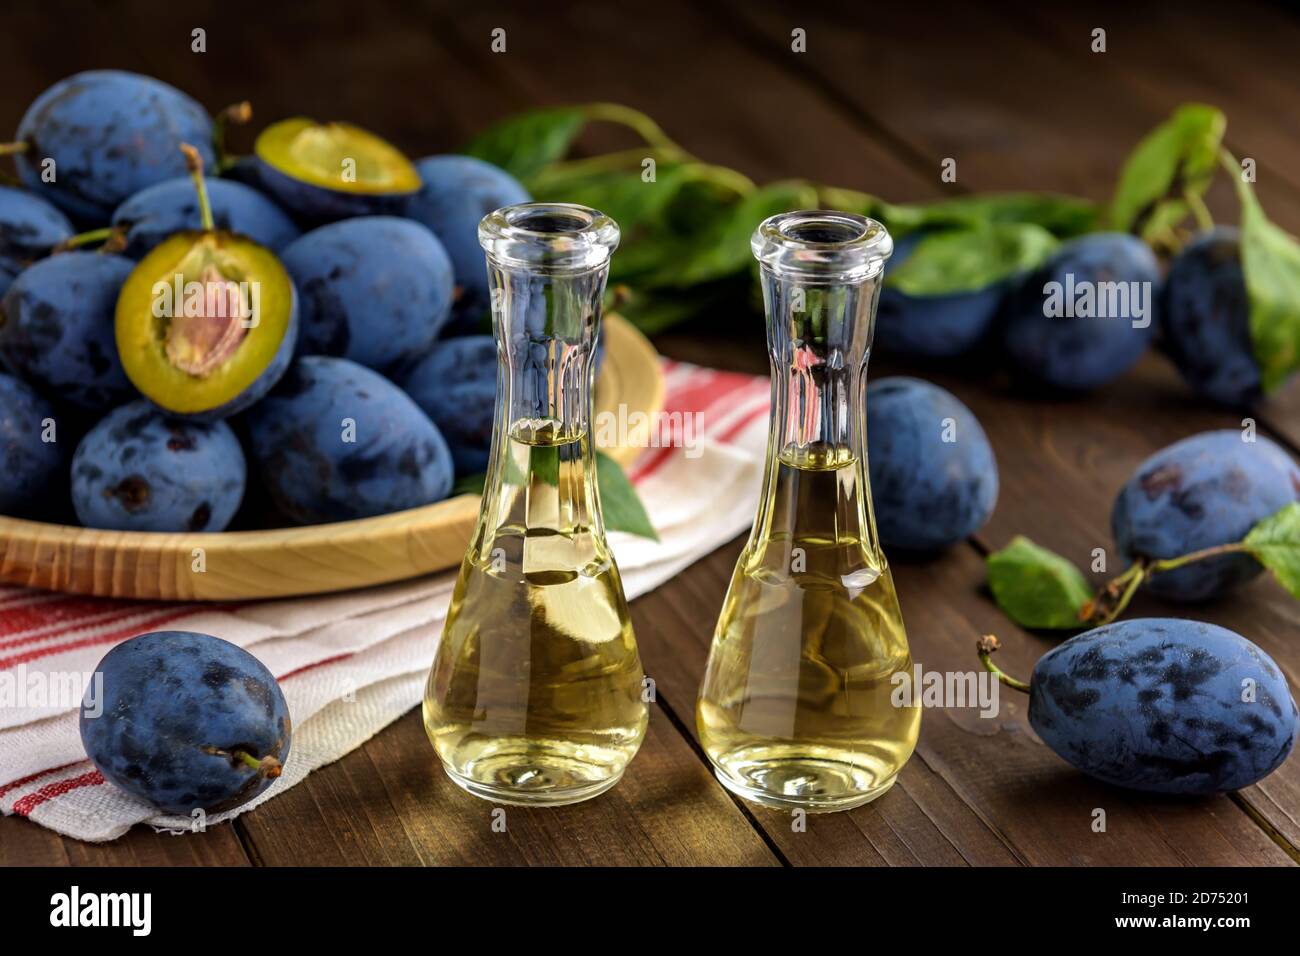 Brandy de prune ou schnaps dans de petites bouteilles de verre avec des prunes fraîches et savoureuses sur une table en bois. Mise au point sélective. Banque D'Images